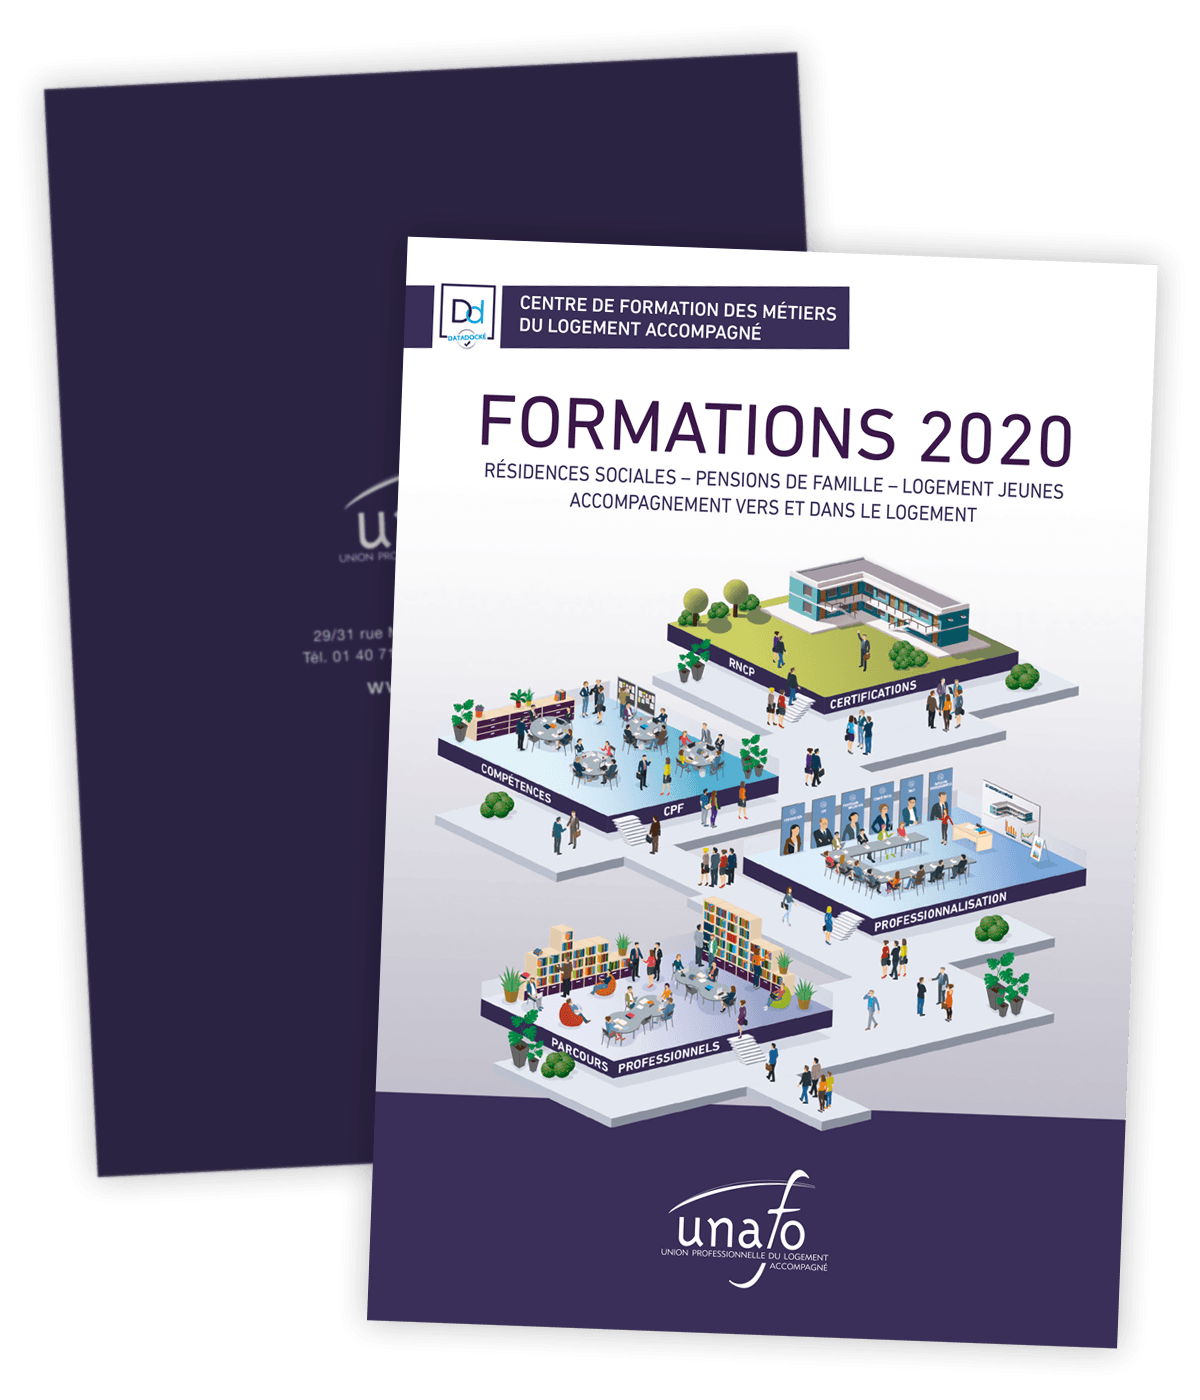 Catalogue des formations 2020 créé pour l'Unafo par Caramel & Paprika - Première et dernière pages de couverture